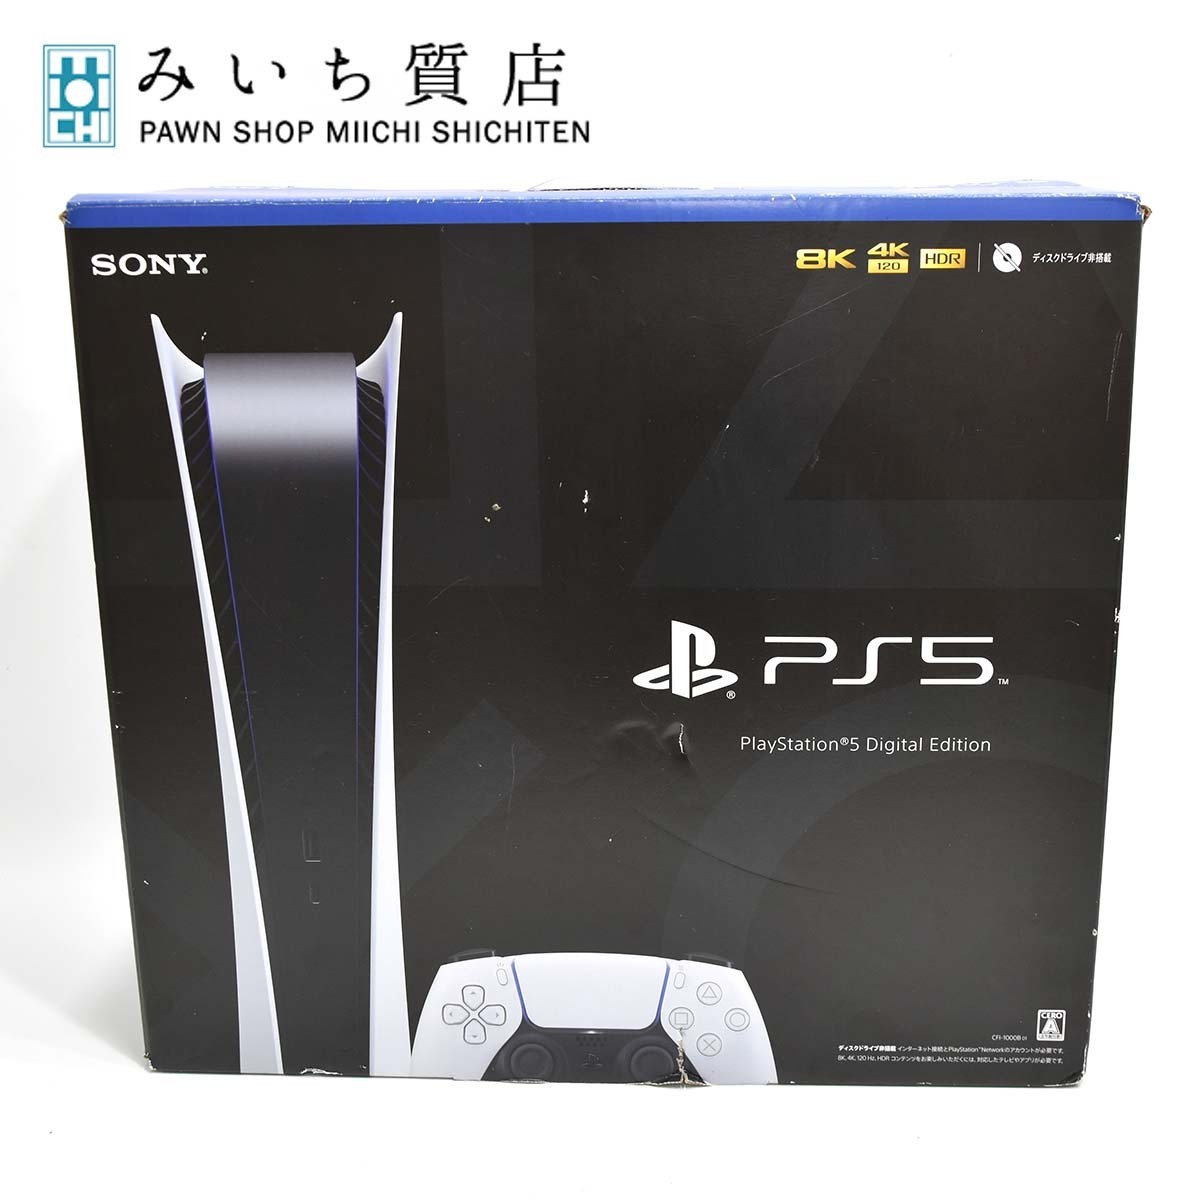 質屋 ゲーム機 PS5 プレイステーション5 デジタルエディション CFI-1000B01 SONY ソニー ディスクドライブ非搭載 みいち質店